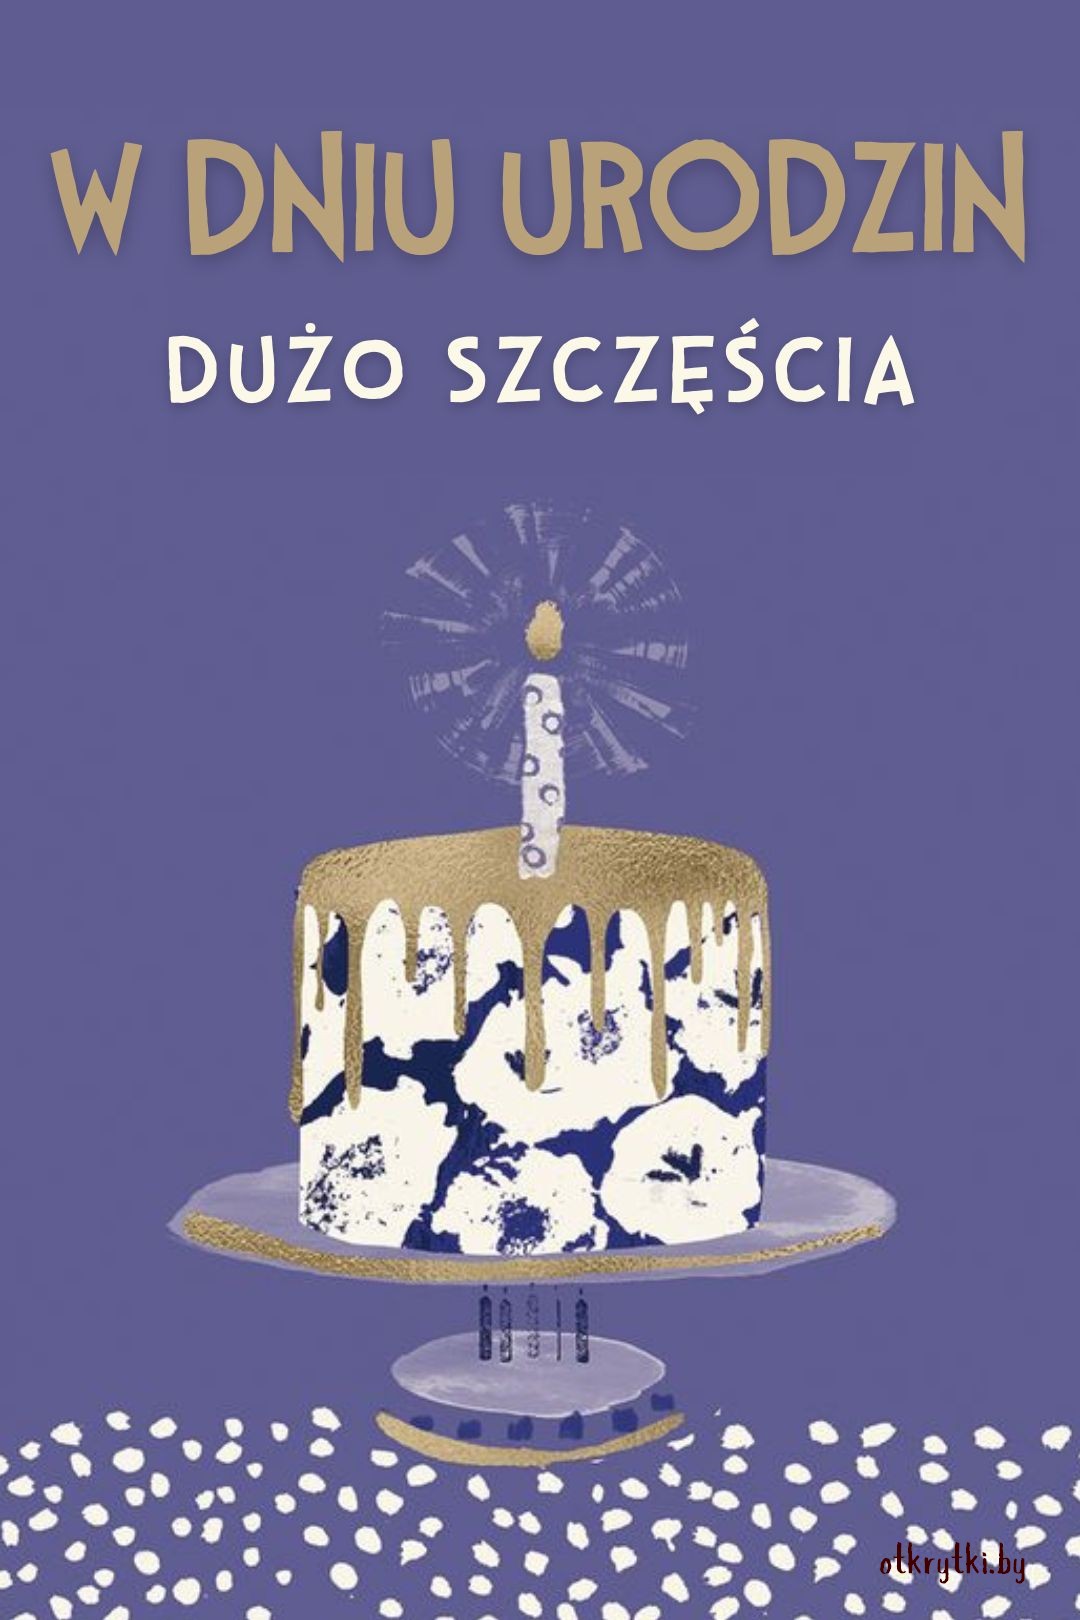 Польская открытка с тортом на день рождения